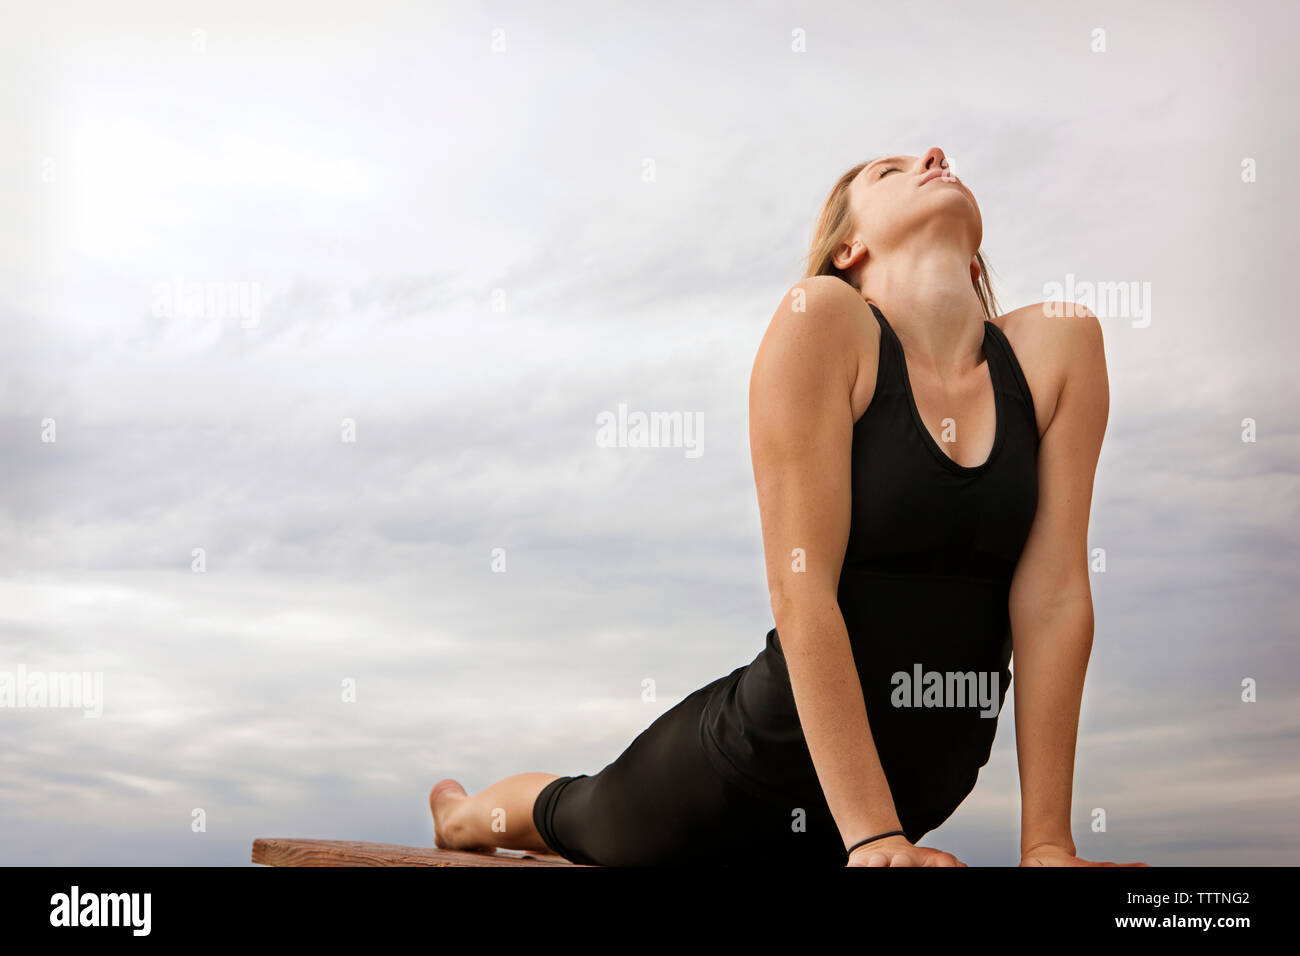 Mujer joven practicando yoga pose perro boca arriba contra el cielo nublado Foto de stock